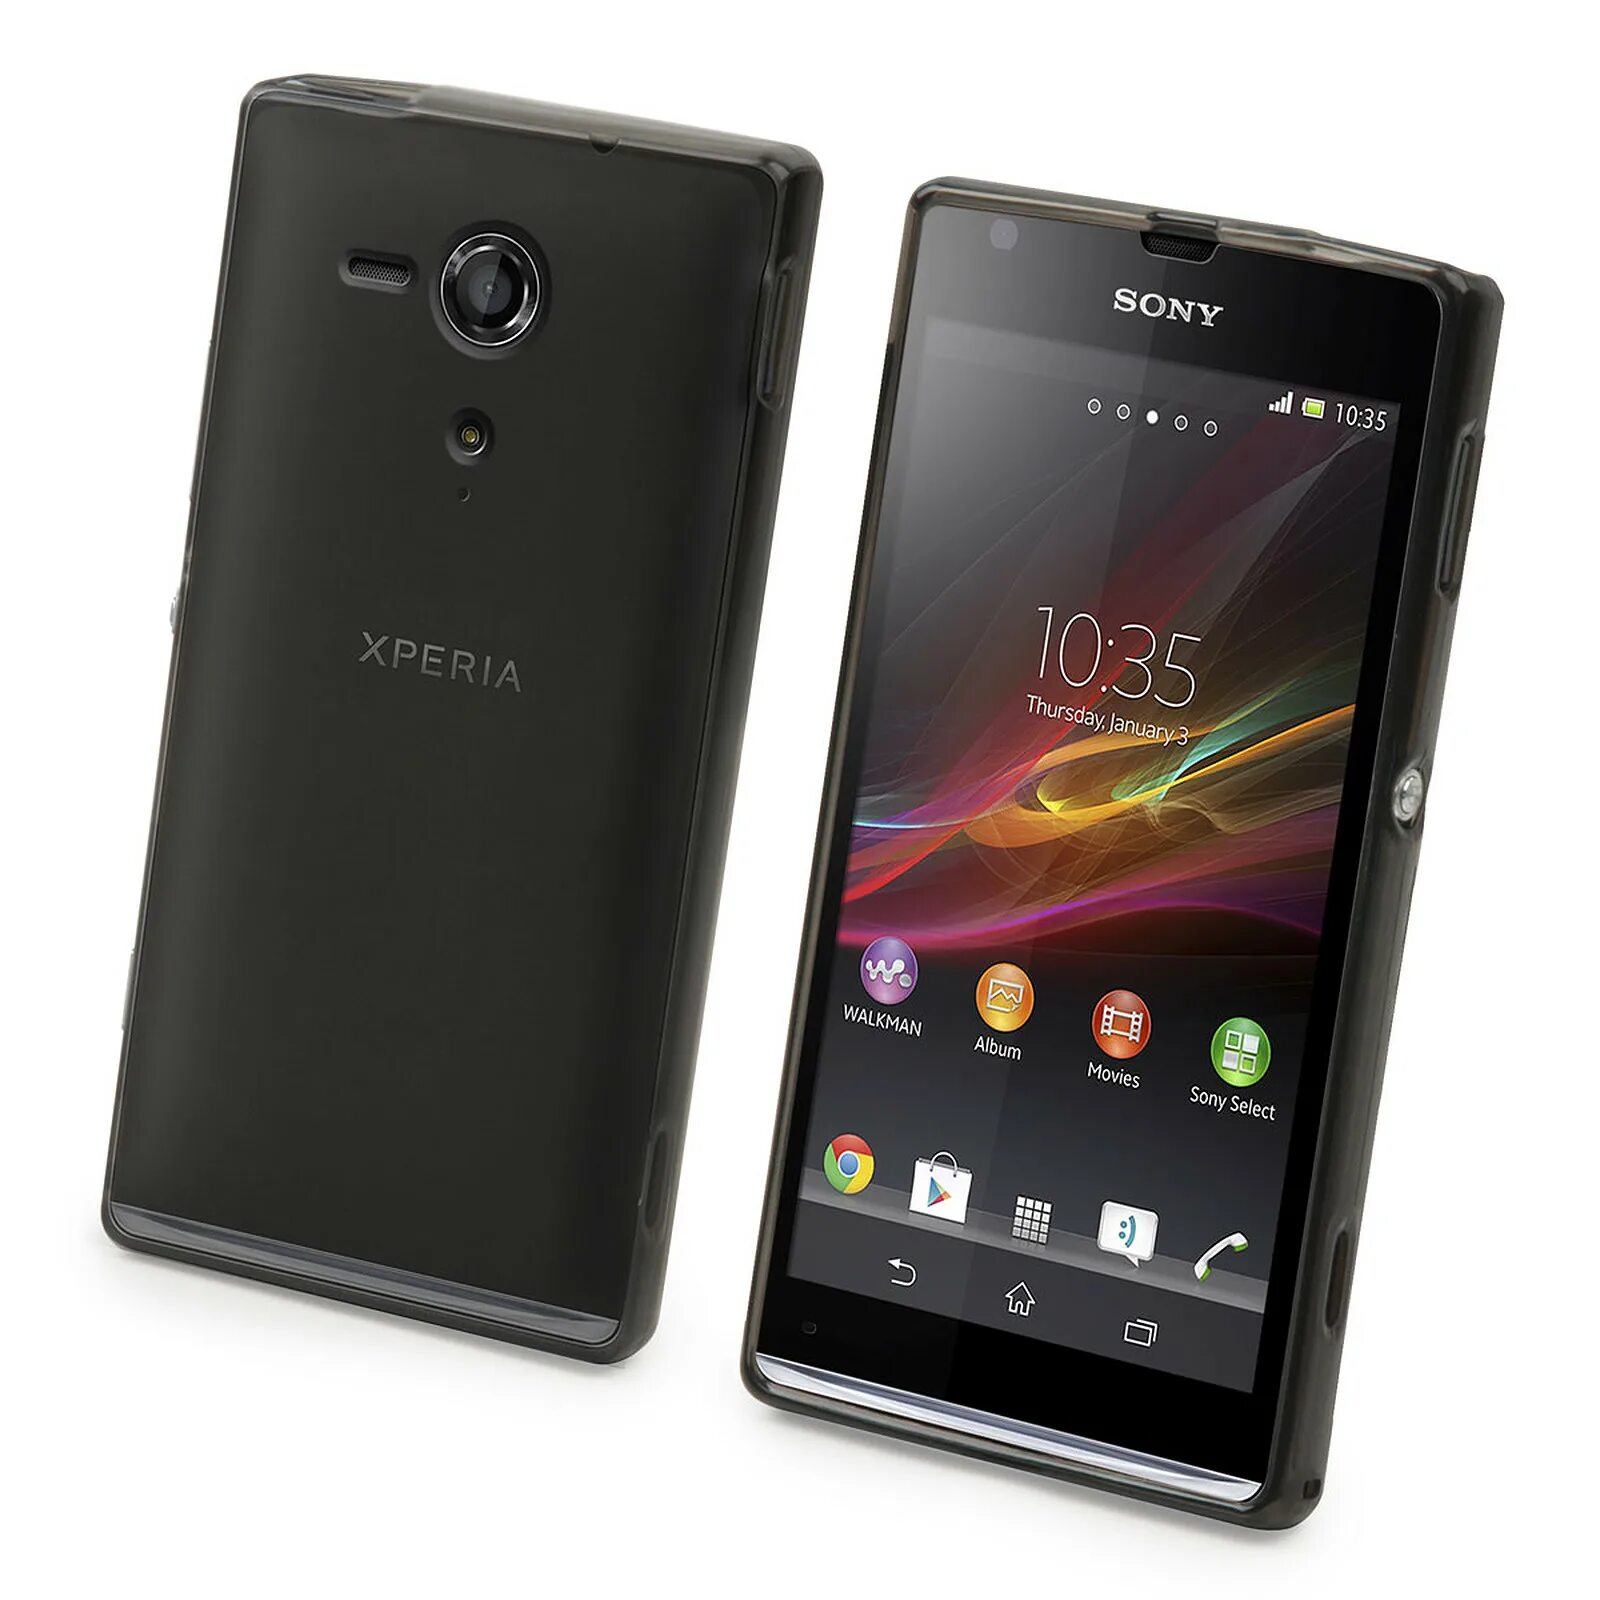 Sony Xperia c6603. Sony Xperia c6602. Sony Xperia SP. Sony Xperia z c6602. Xperia sp